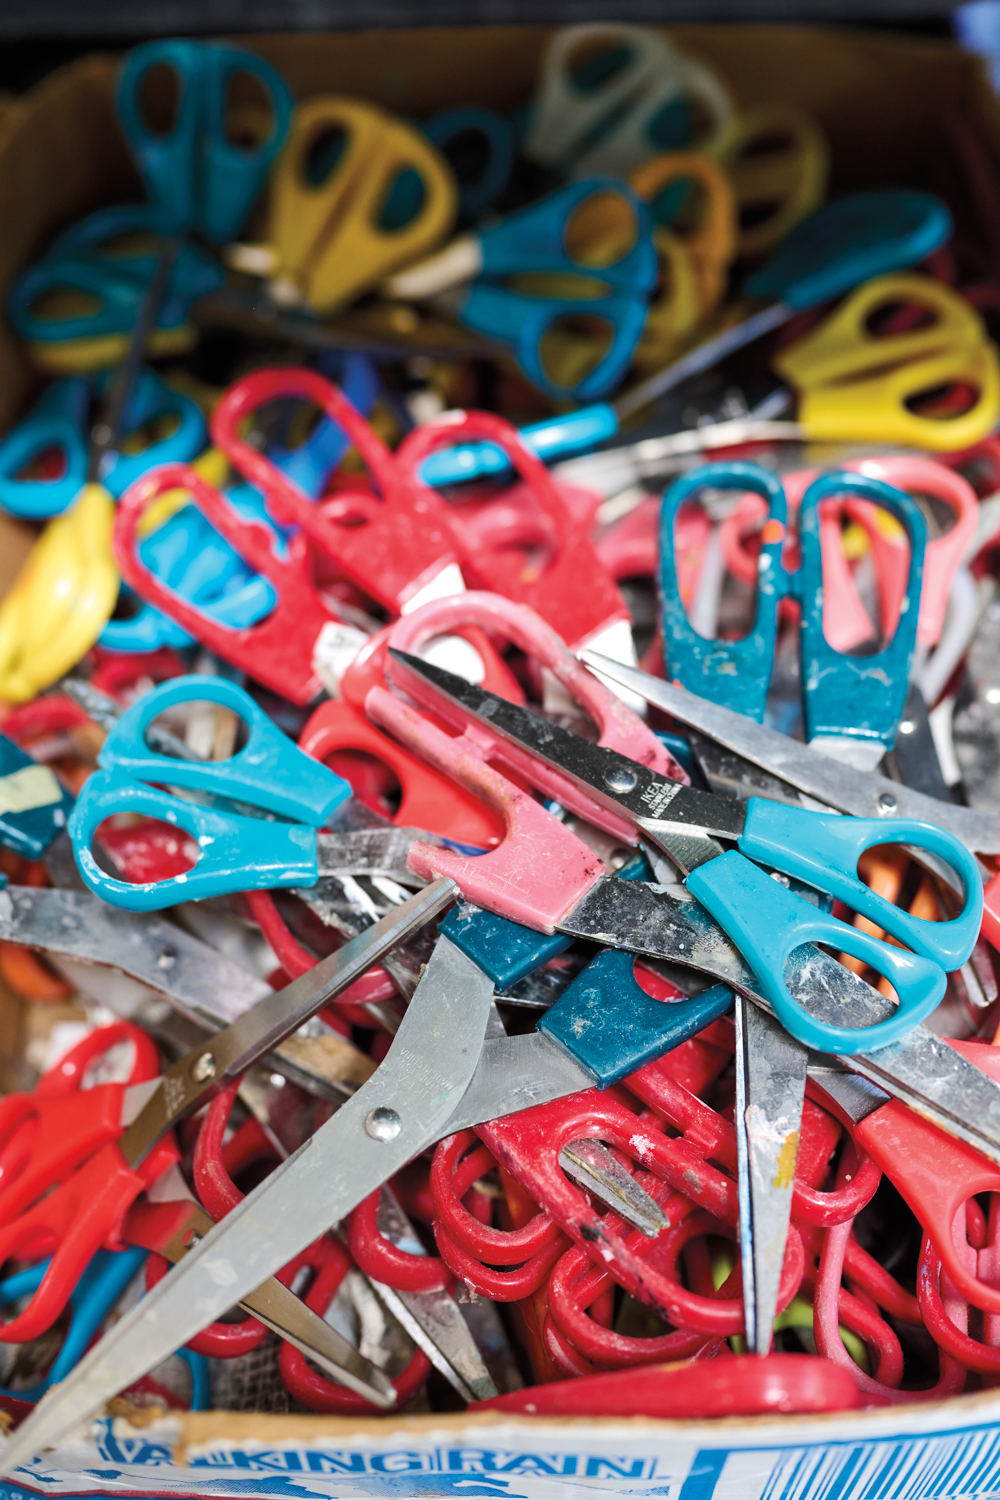 A bin of colorful scissors belonging to Eva Isaksen